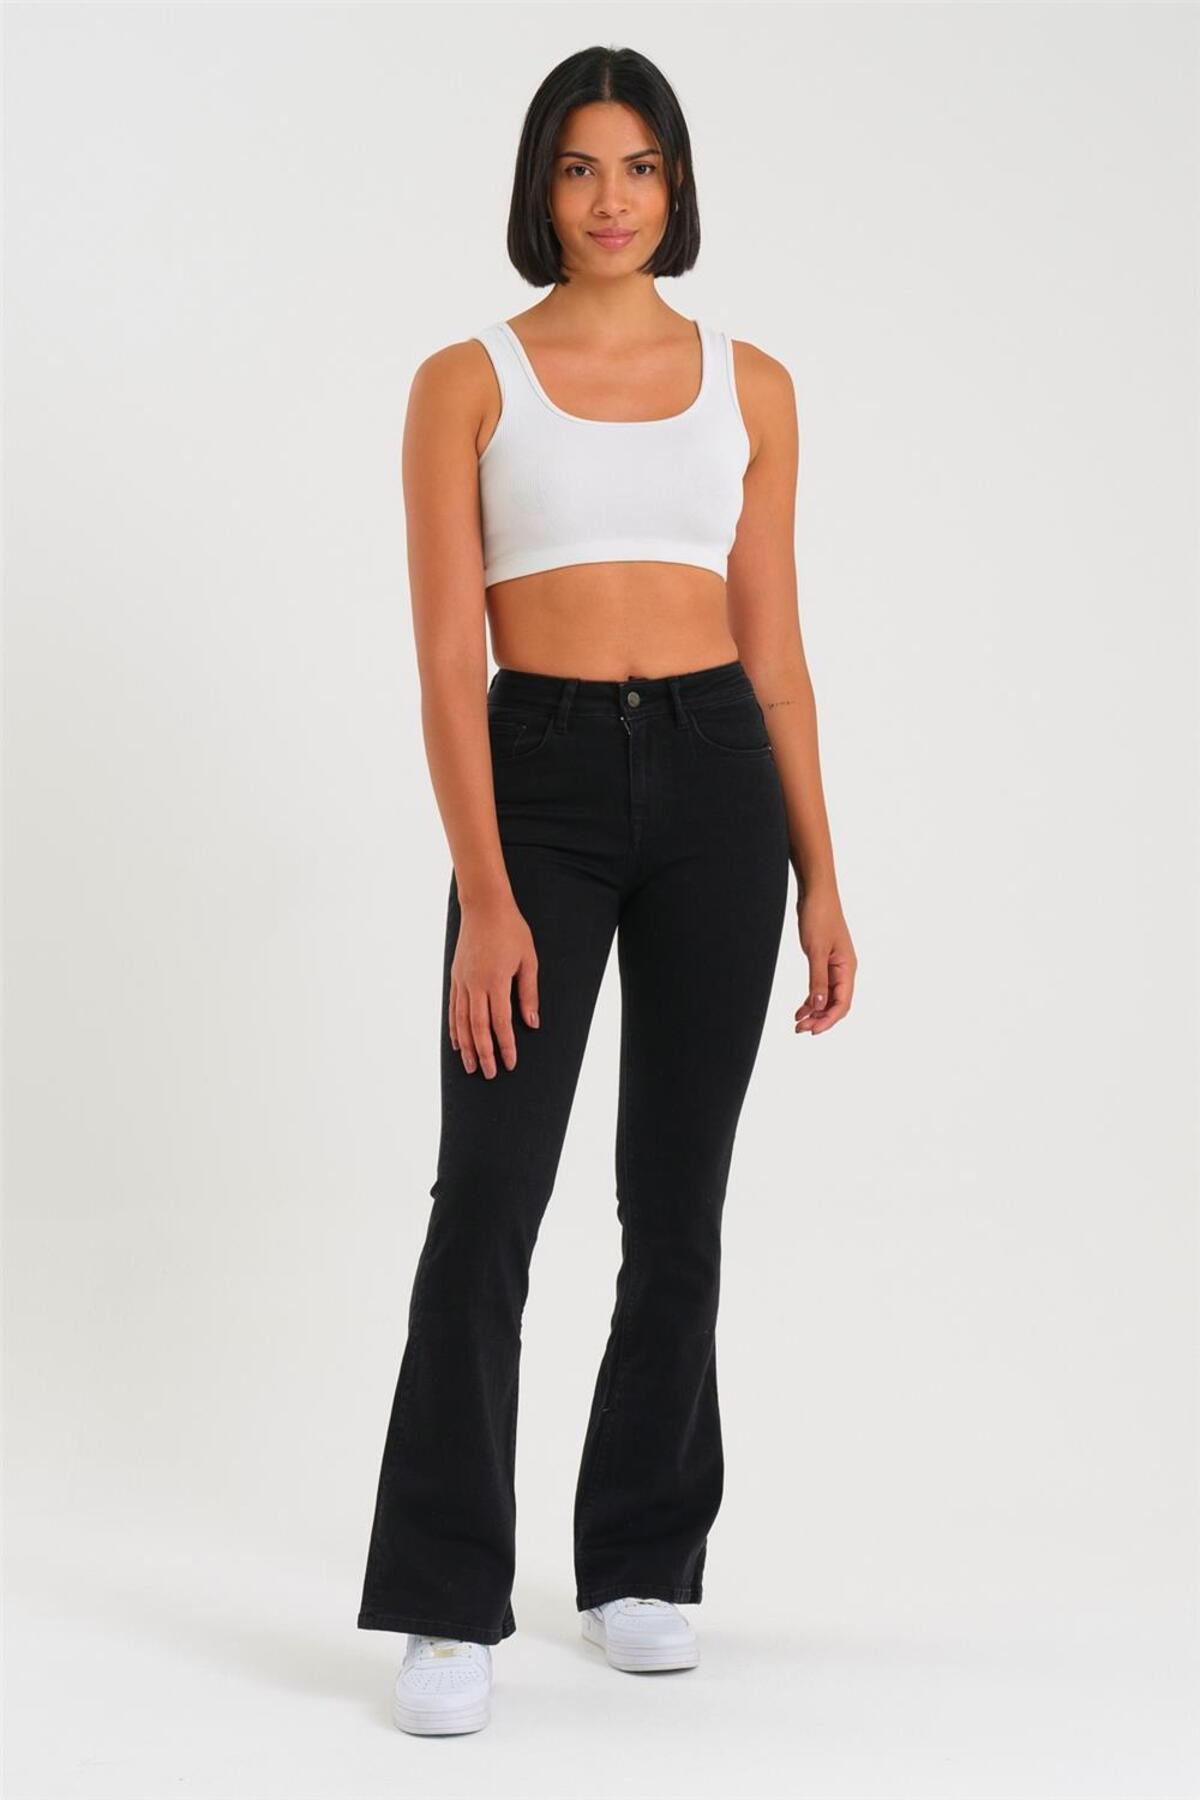 EXPLODE - Kadın Siyah Likralı Yüksek Bel Flare Jeans Siyah